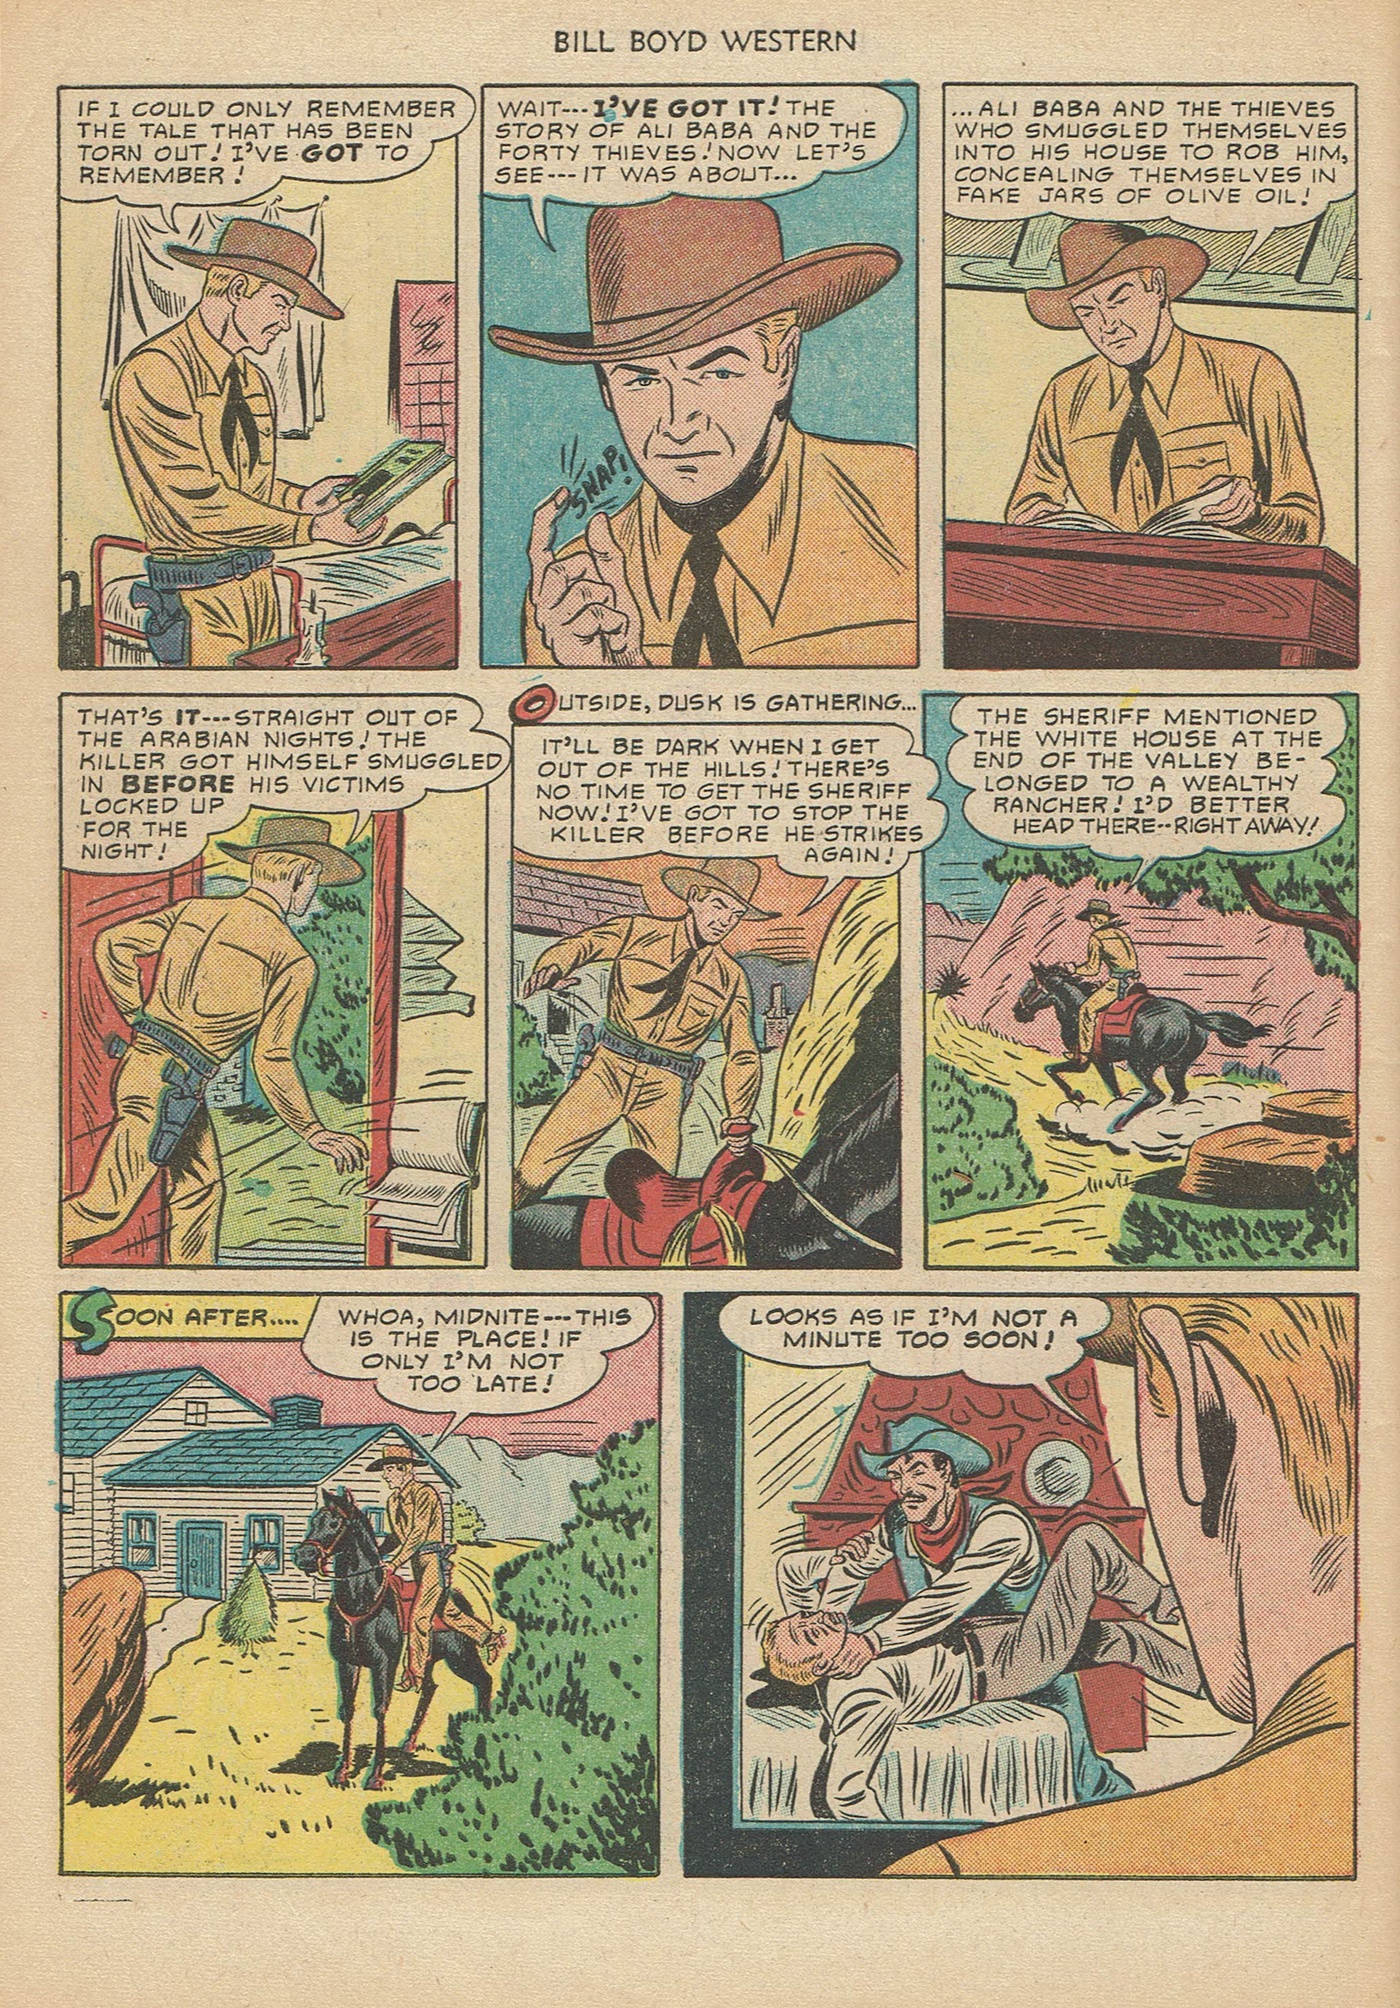 Read online Bill Boyd Western comic -  Issue #6 - 46